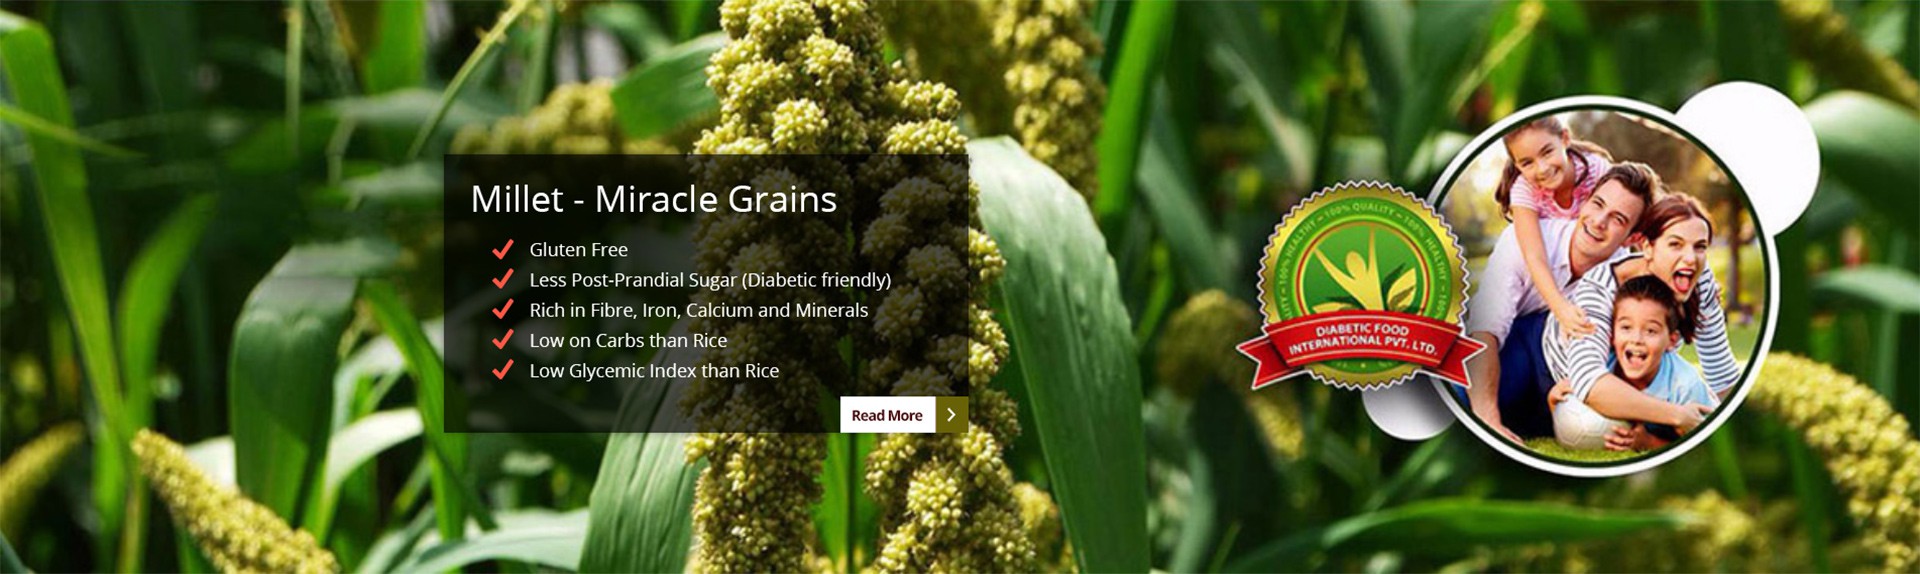 Millet - Miracle Grains